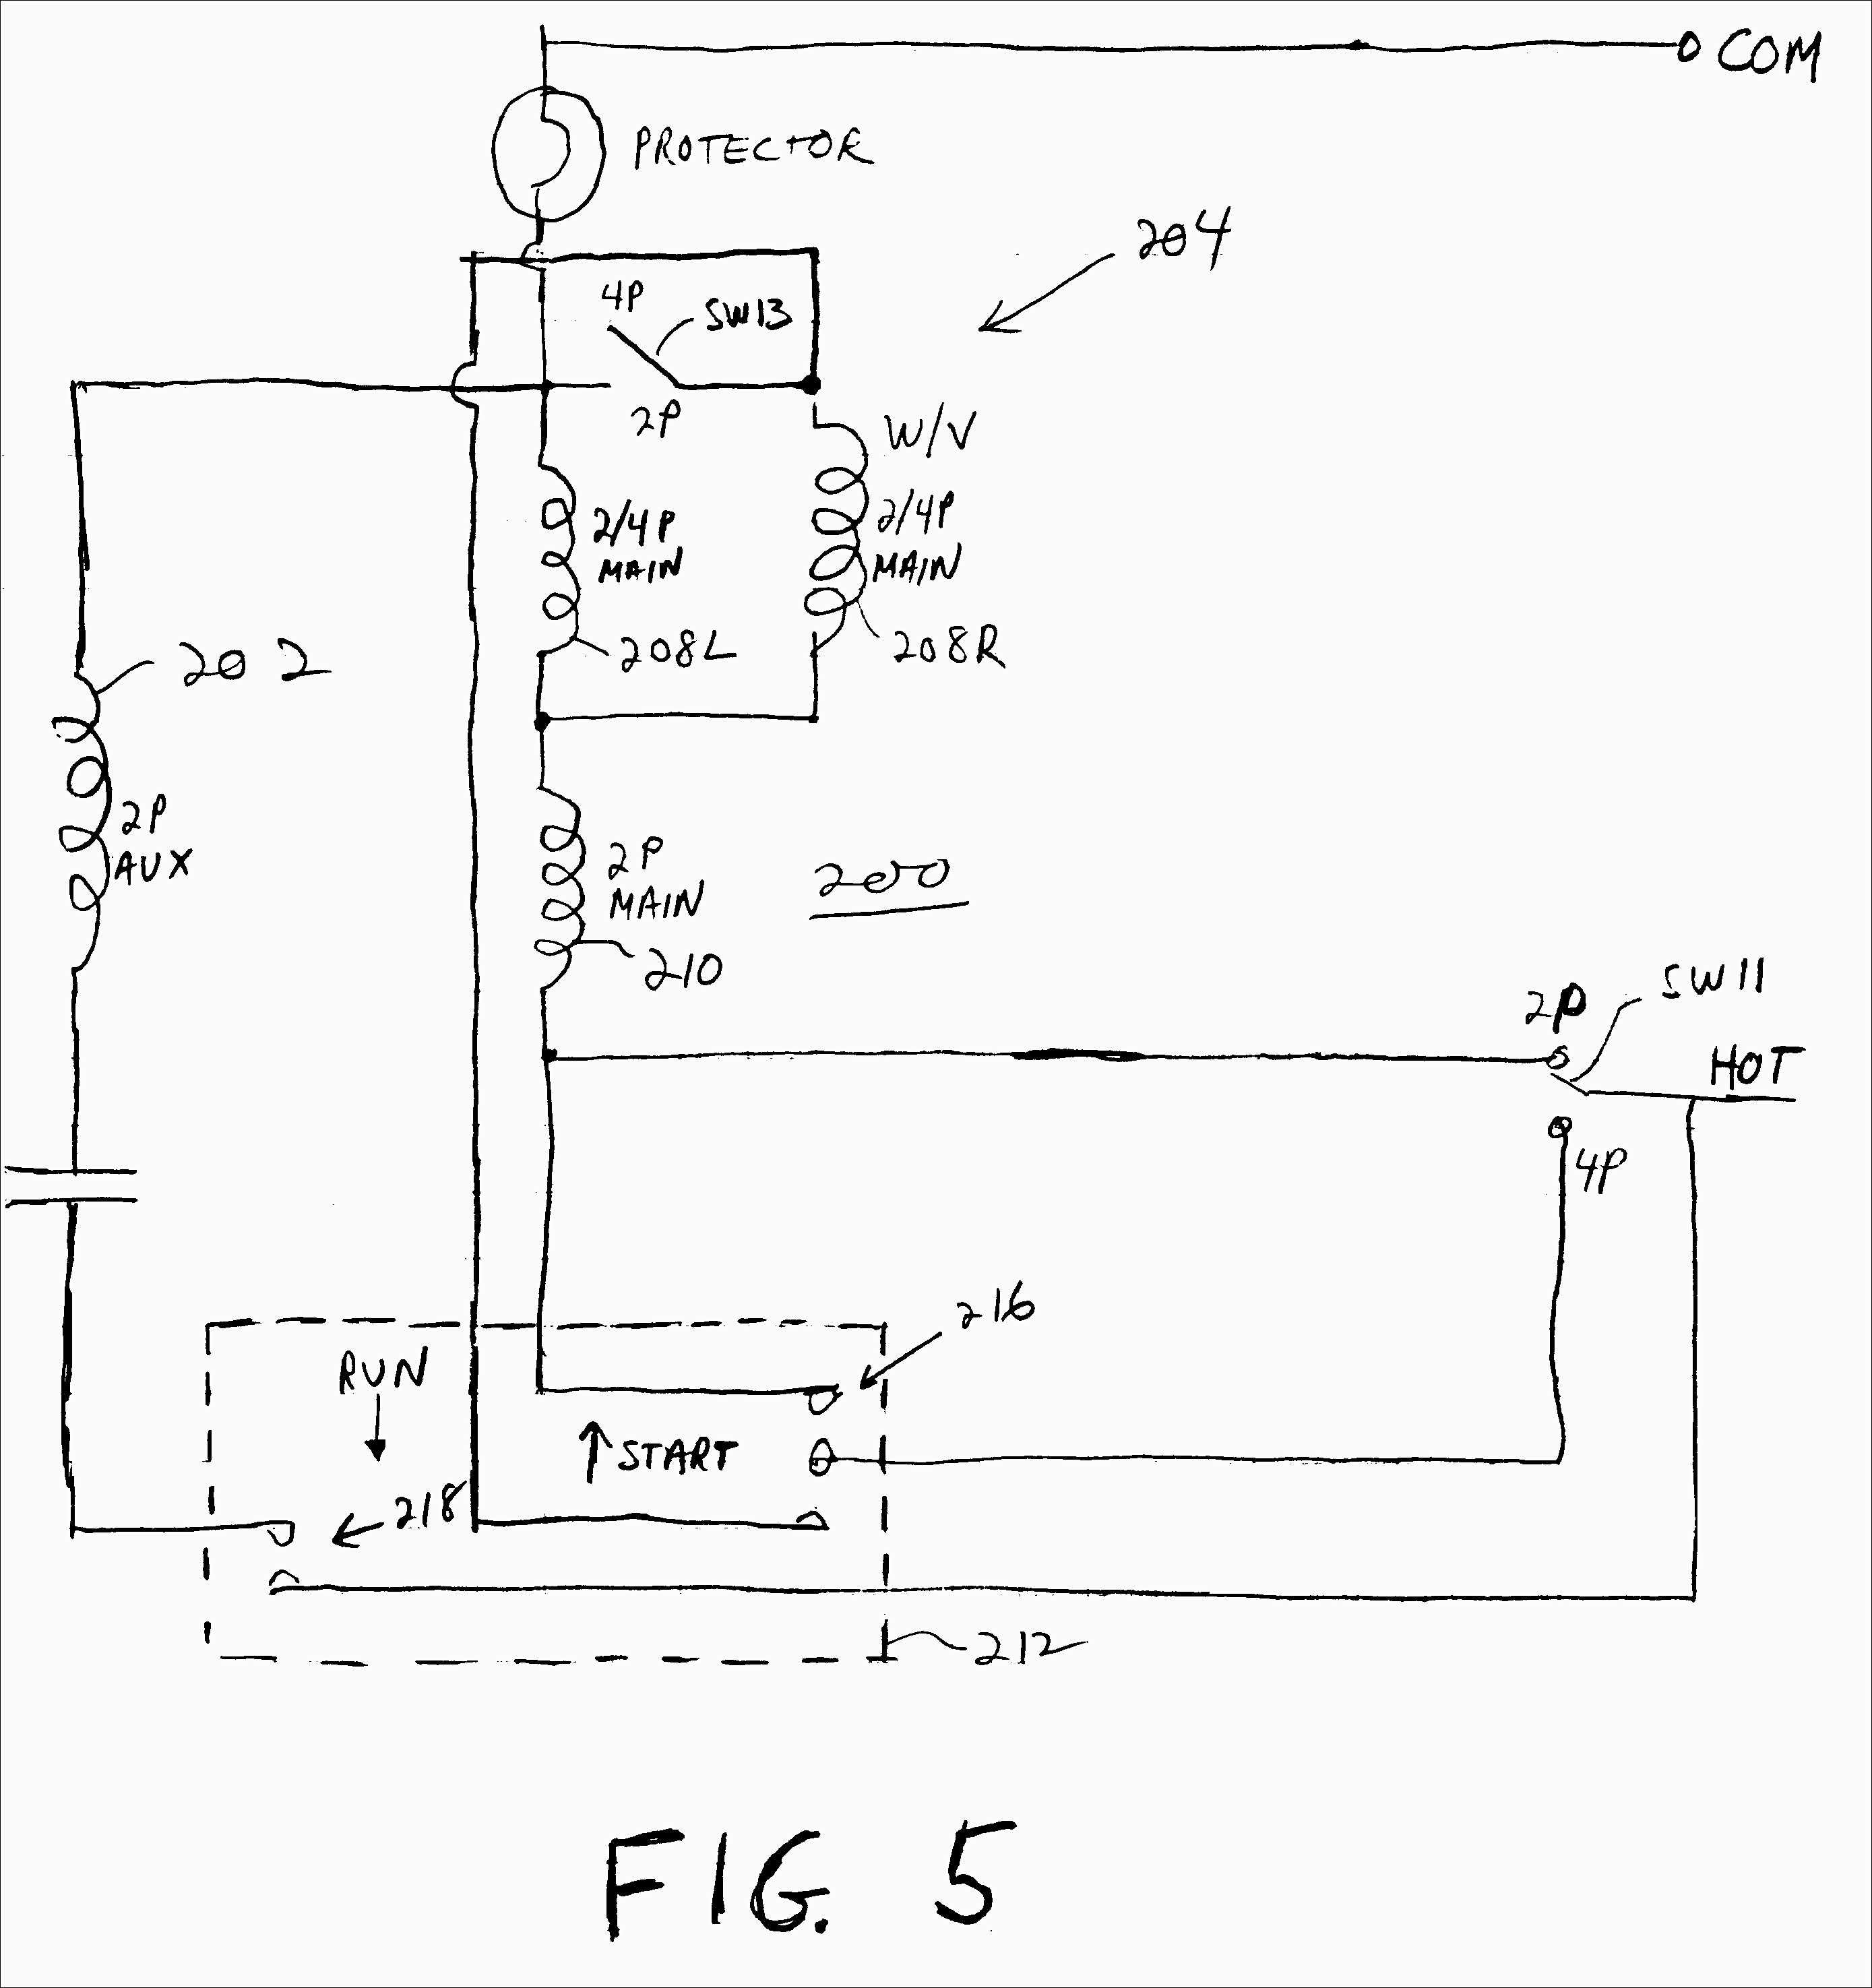 Marathon Pool Pump Motor Wiring Diagram | Wiring Diagram - Marathon Electric Motor Wiring Diagram